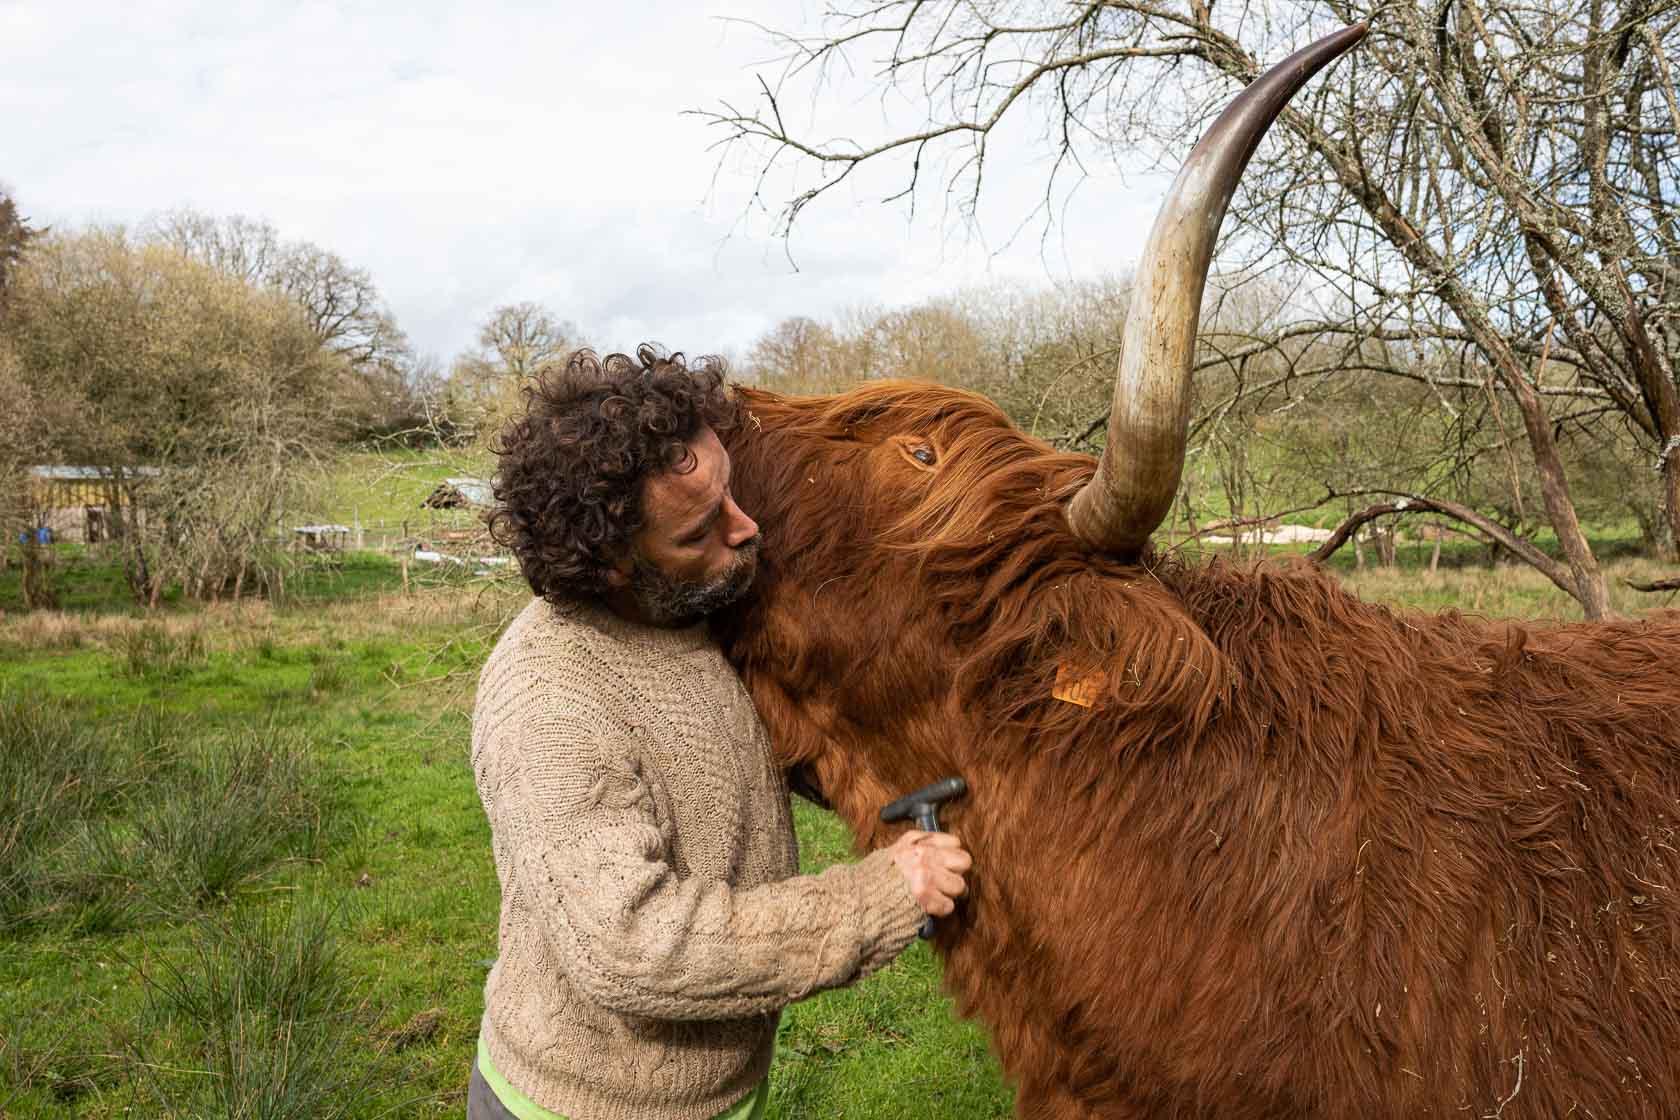 Julien Brothier, éleveur de brebis, s'occupe d'Isidore un bœuf de race highland qui entretient un de ses pâturages La Vraie Croix, France - 2020